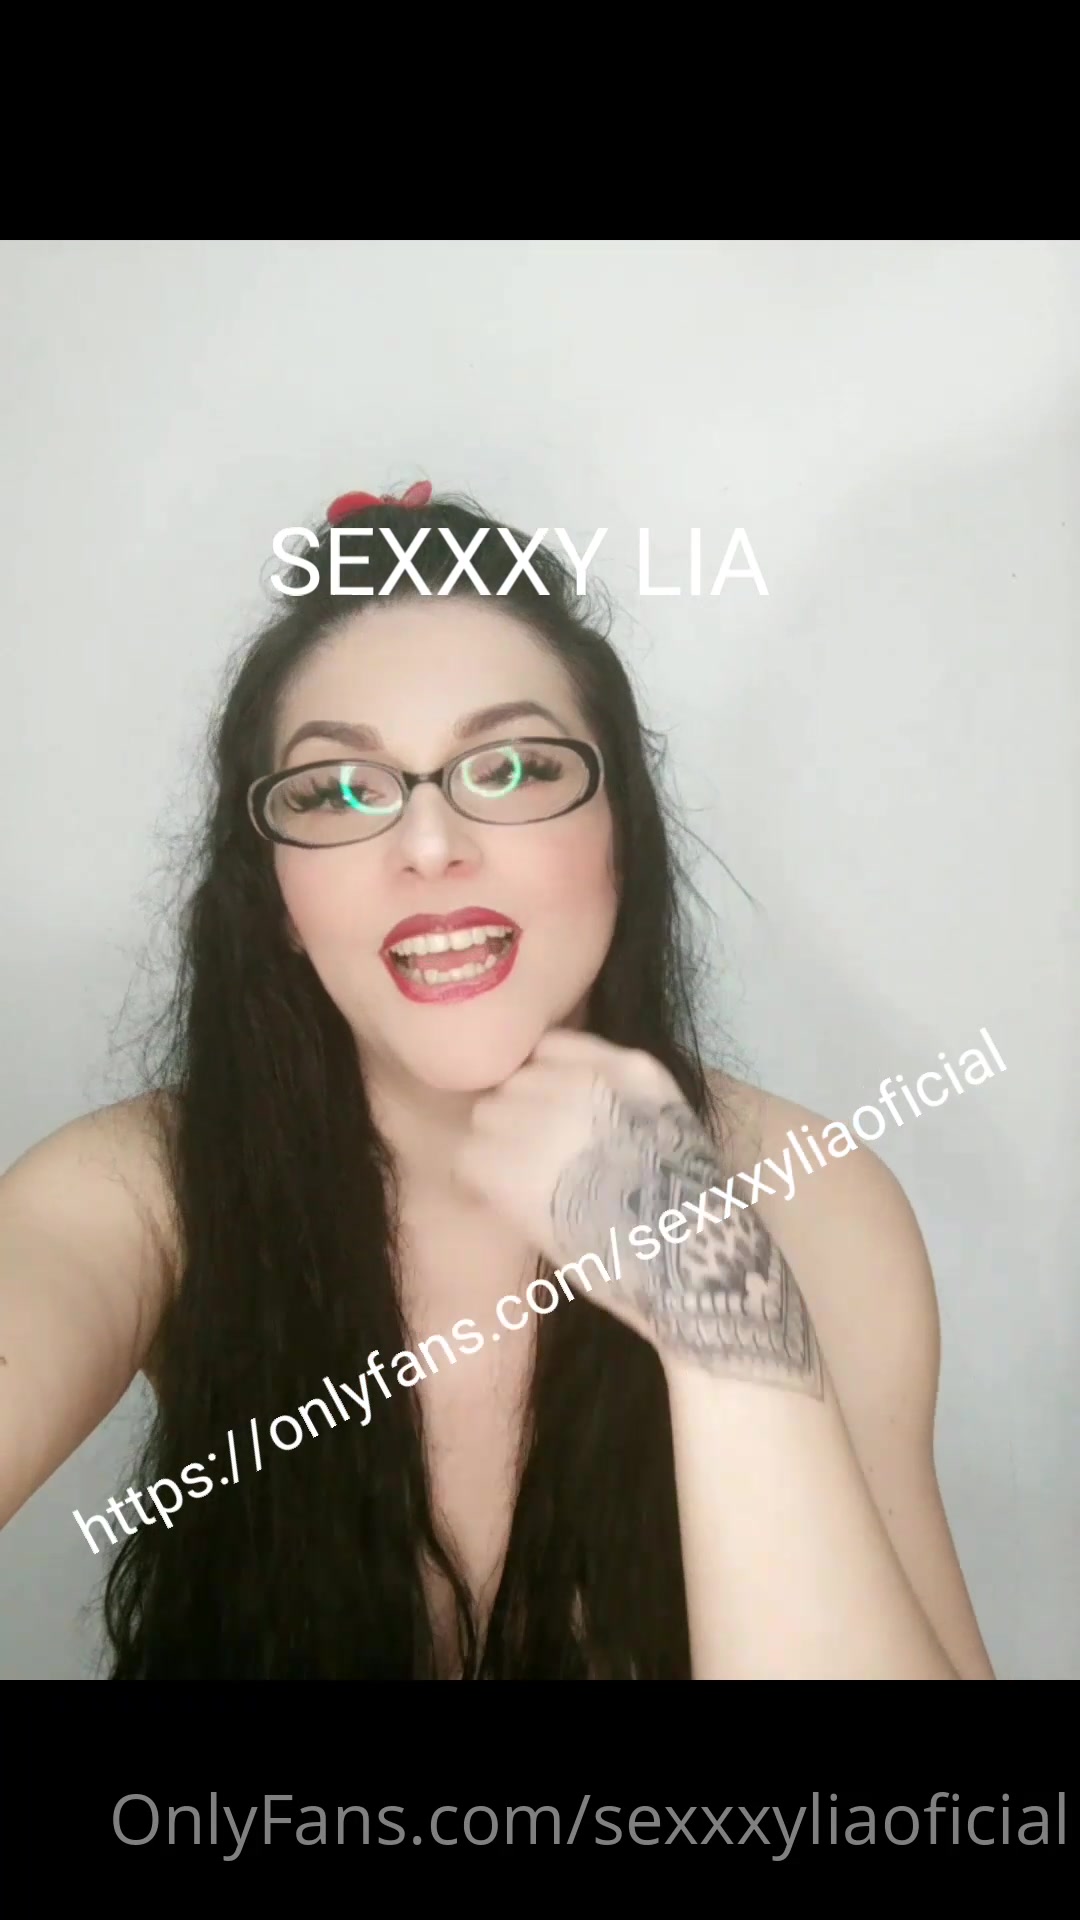 1080px x 1920px - Sexxxyliaoficial quieres ver como me encanta mamar la verga y com xxx  onlyfans porn videos